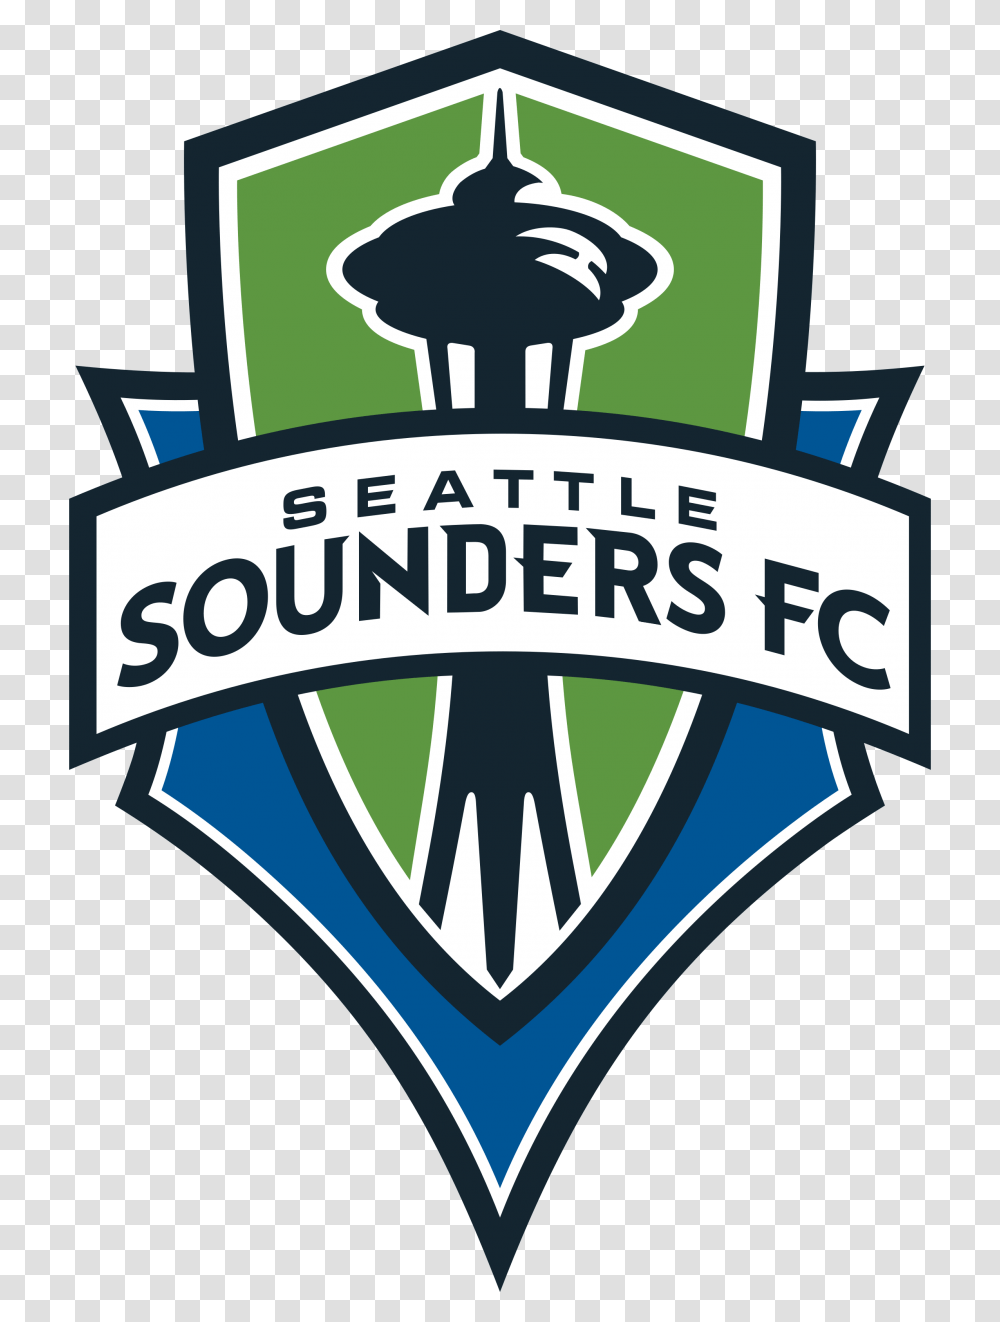 Seattle Sounders Fc Logo Vector, Badge, Emblem, Label Transparent Png